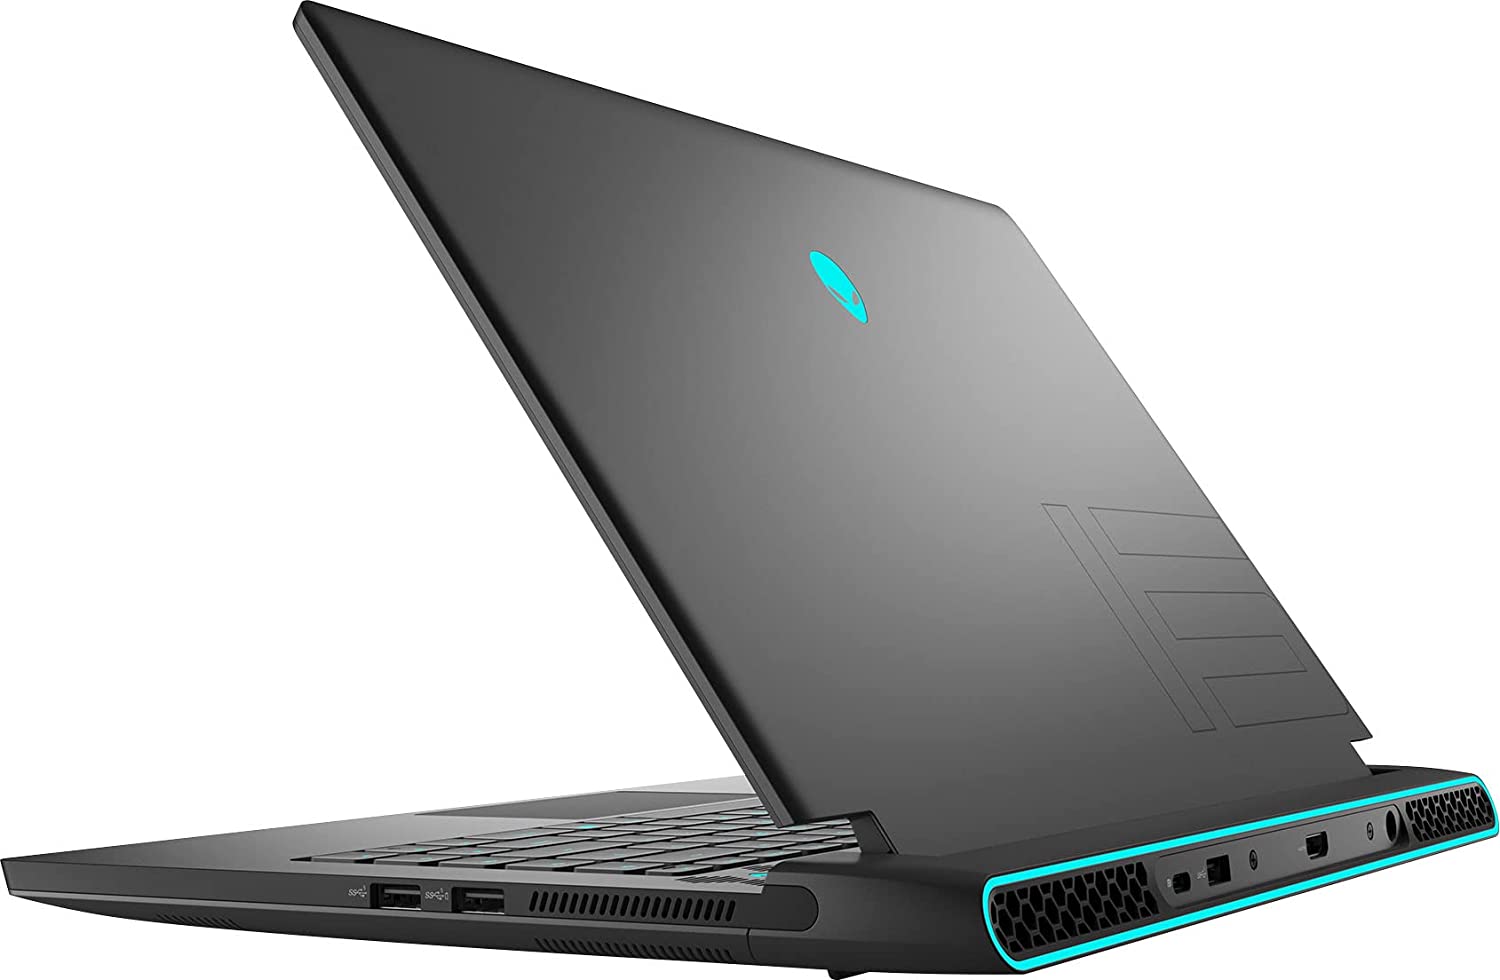 Alienware 15-inch laptops